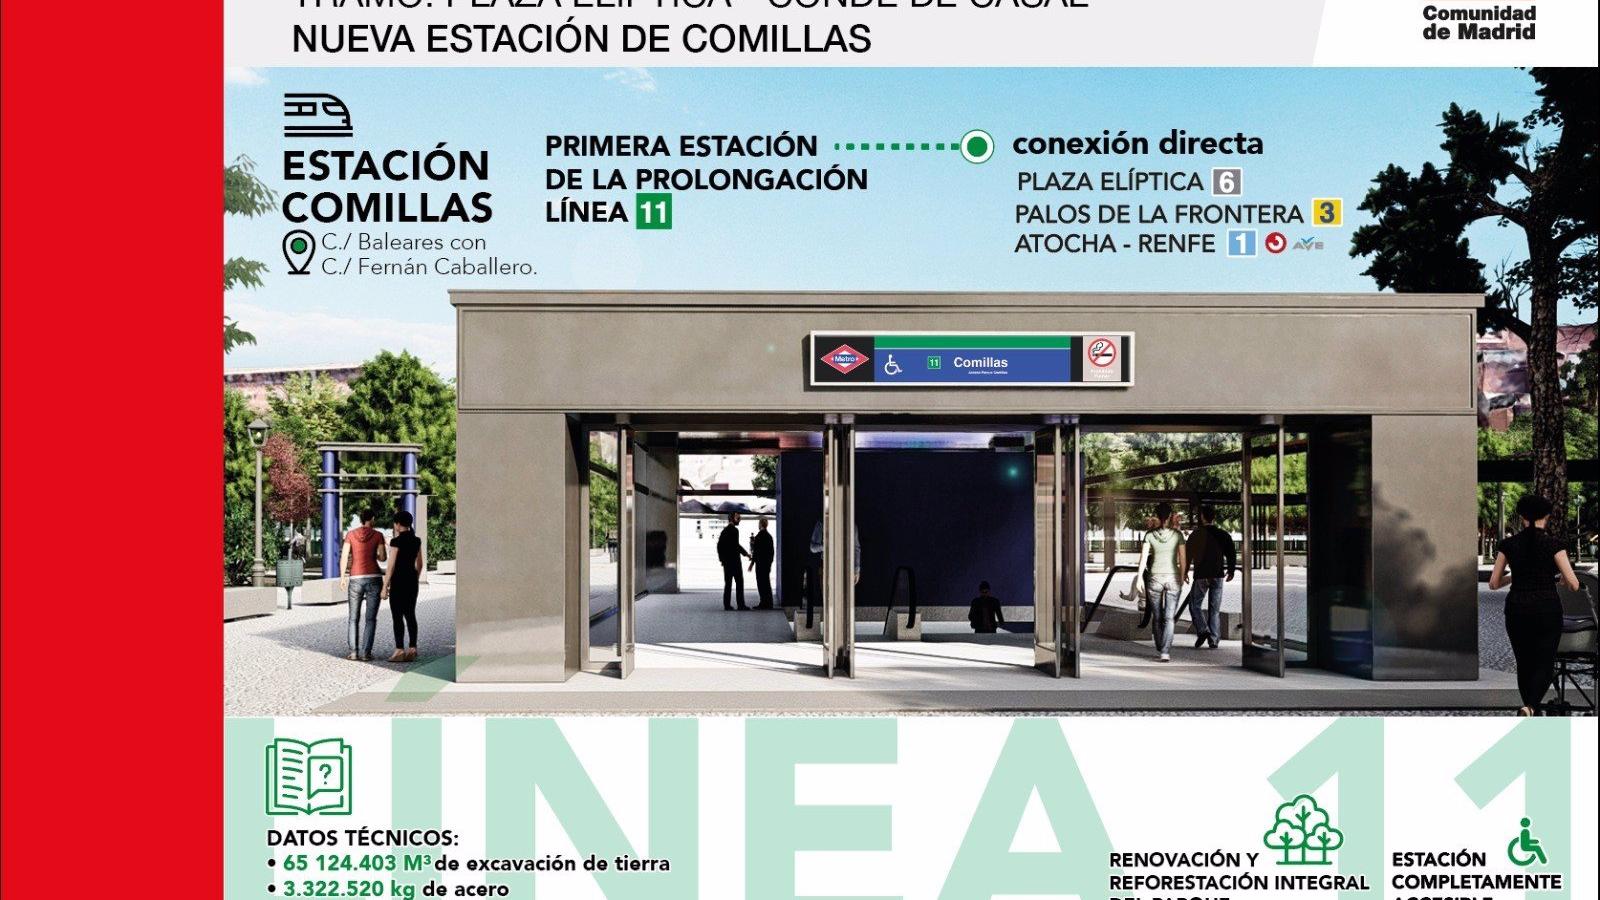 Comienzan las obras de prolongación de la Línea 11 de Metro desde Plaza Elíptica a Conde de Casal